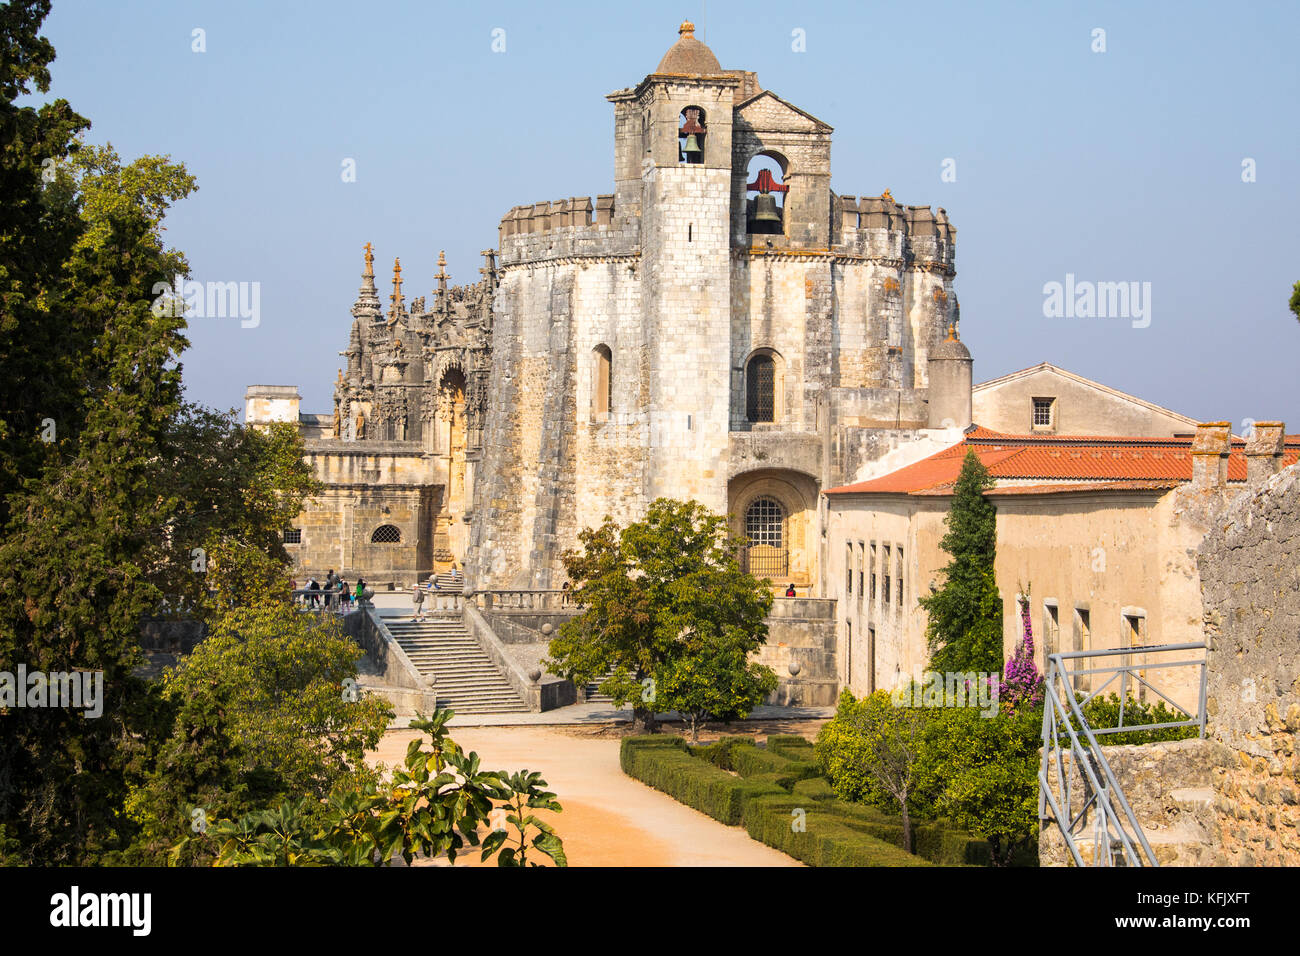 Convent of Christ or Convento de Cristo, Tomar, Ribatejo Province, Portugal Stock Photo